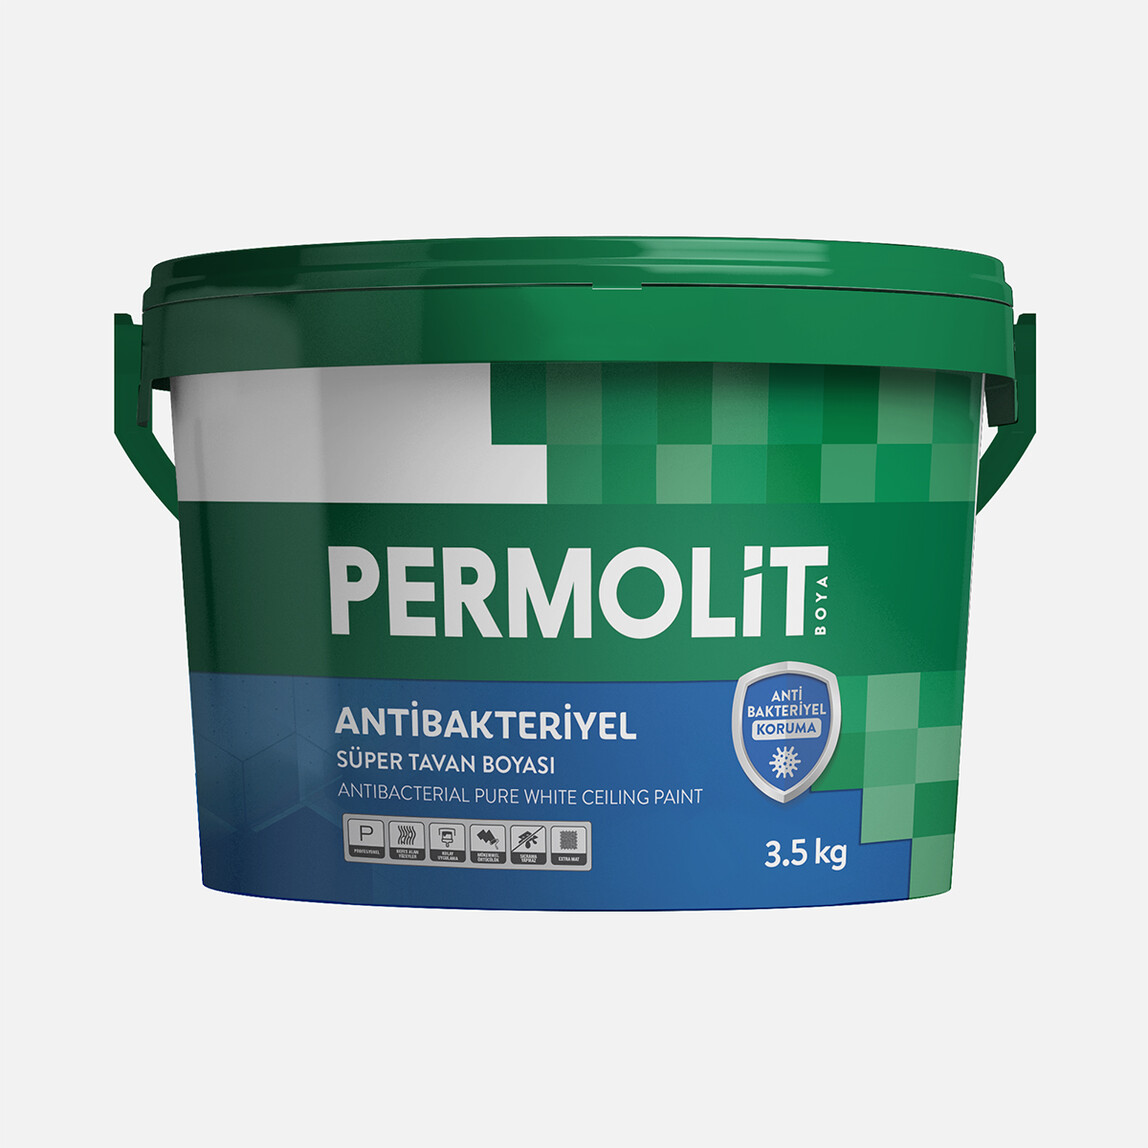    Permolit 3,5 KG Antibakteriyel Süper Tavan Boya 